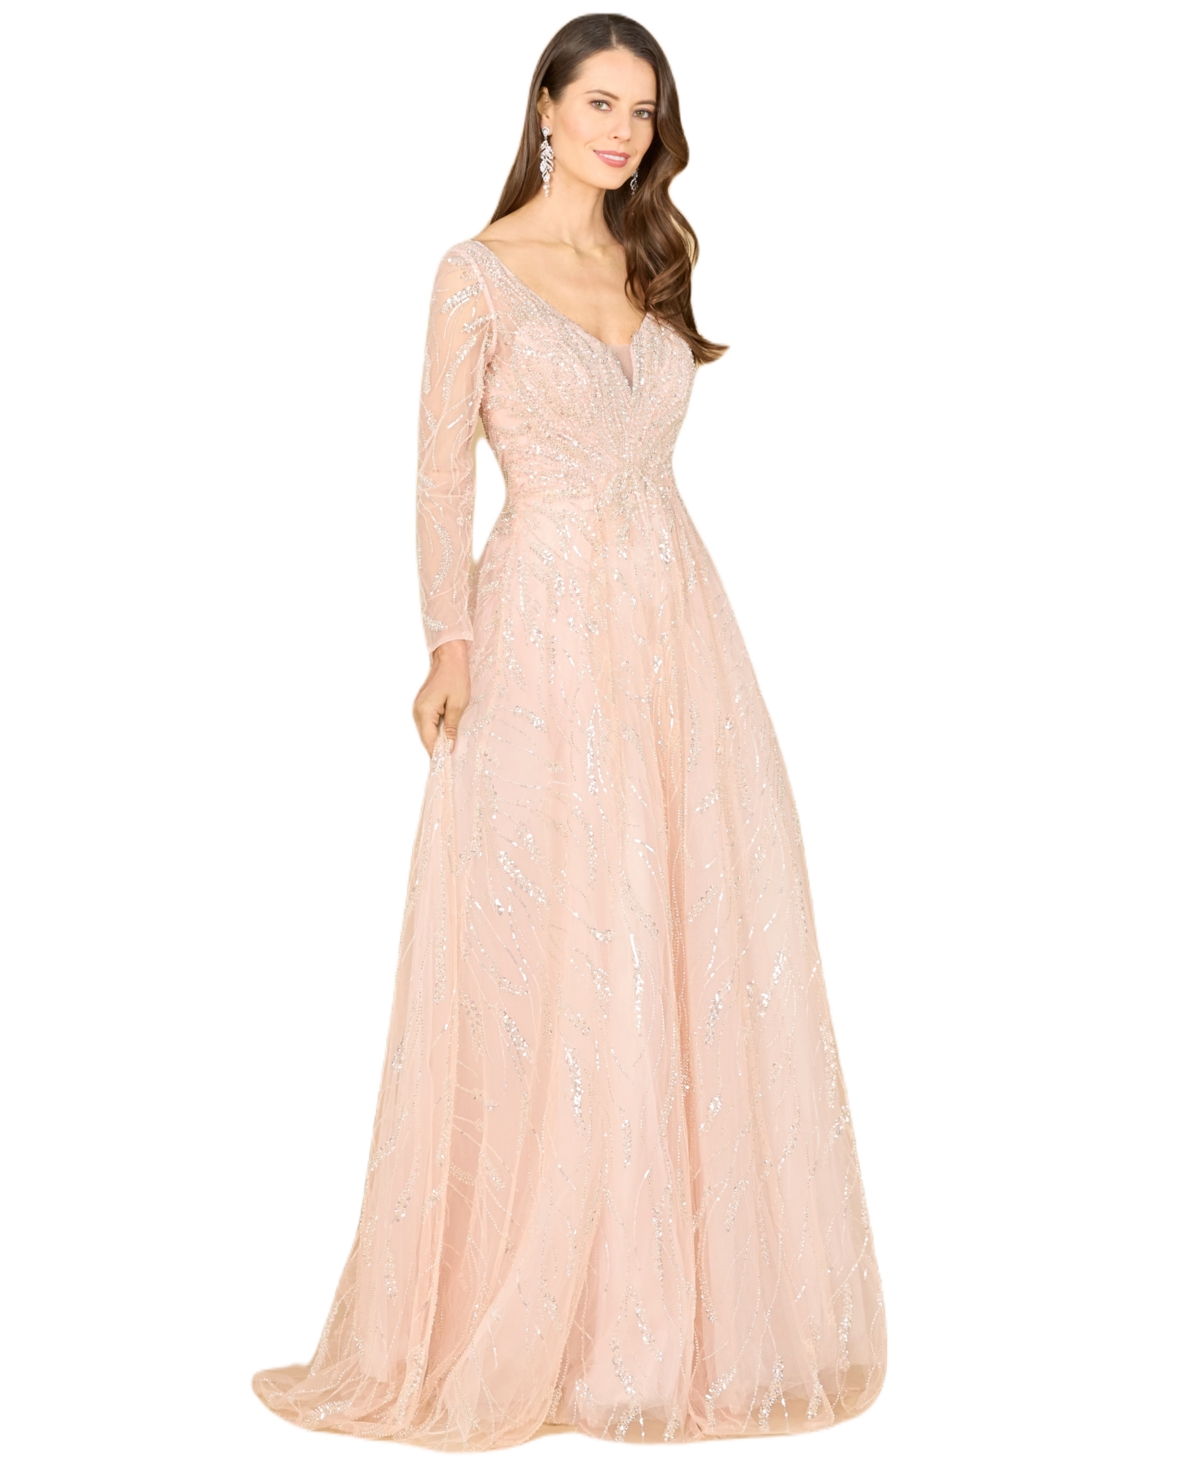 Vintage Evening Dresses, Vintage Formal Dresses Lara Womens Long Sleeve Beaded Lace Gown - Powder pink $698.00 AT vintagedancer.com